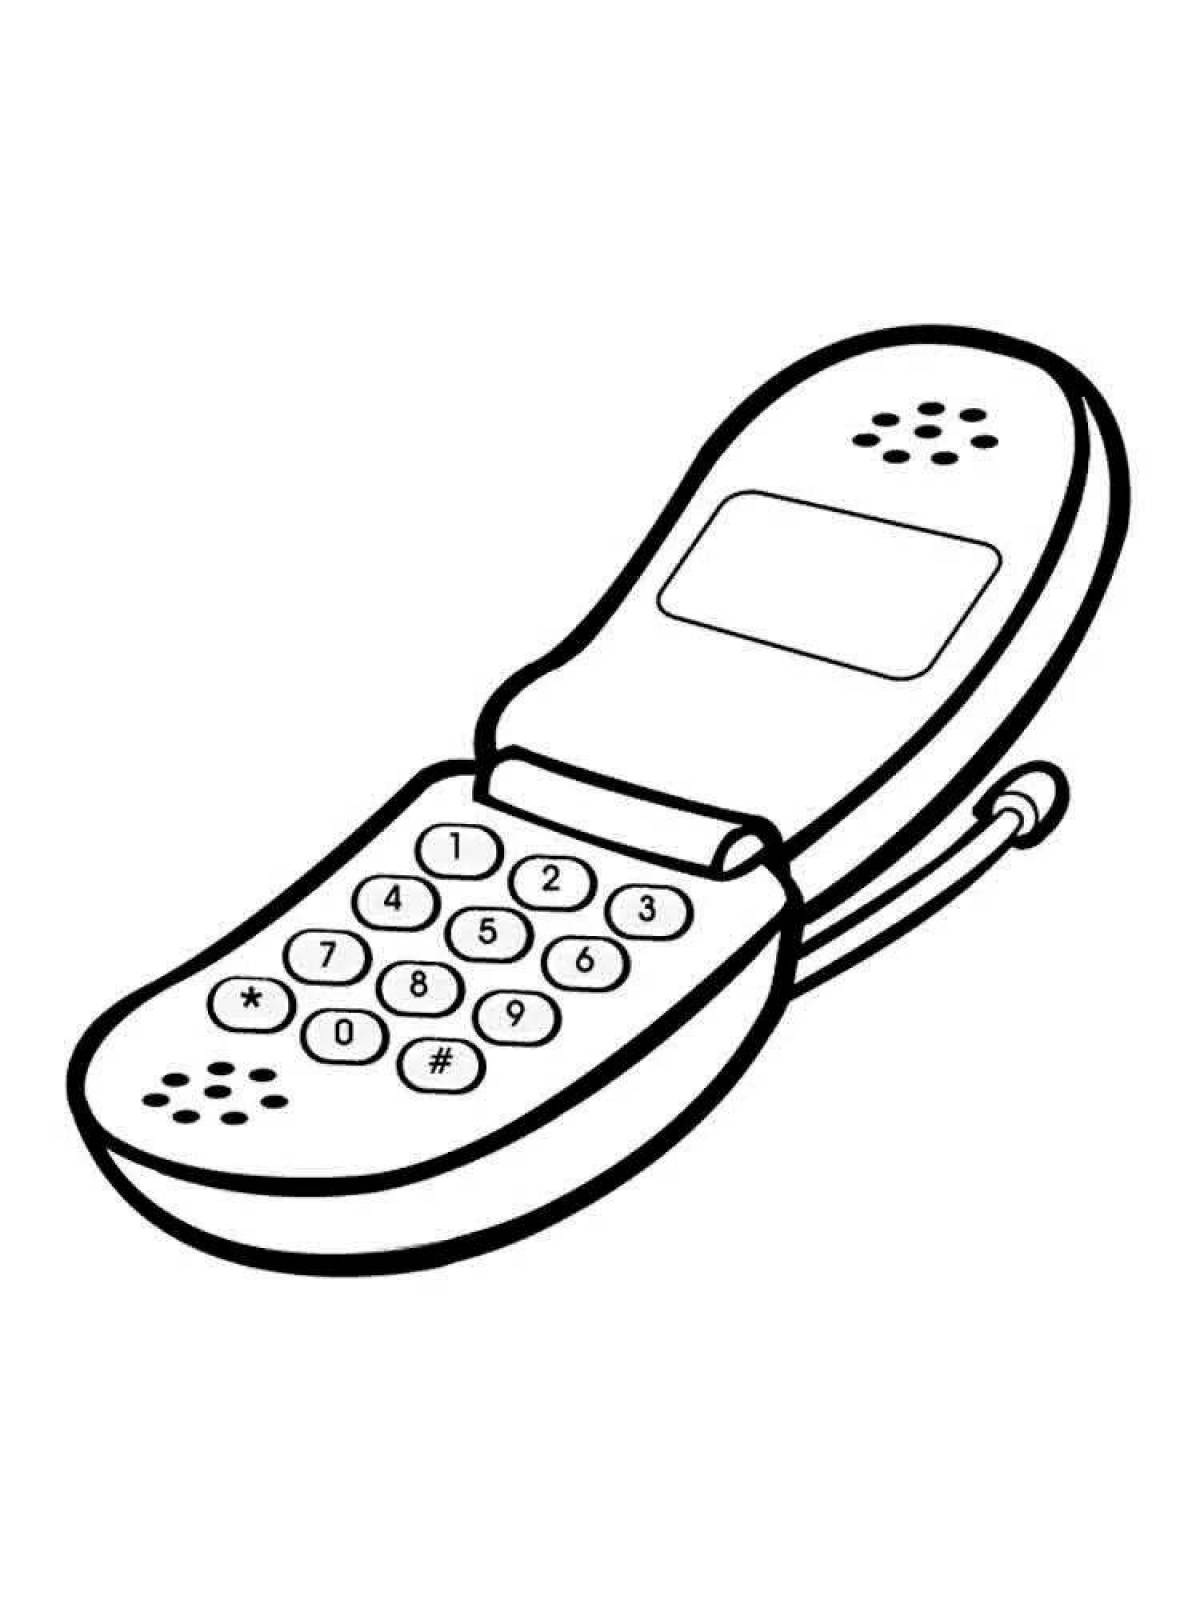 Сказочная страница раскраски сотового телефона